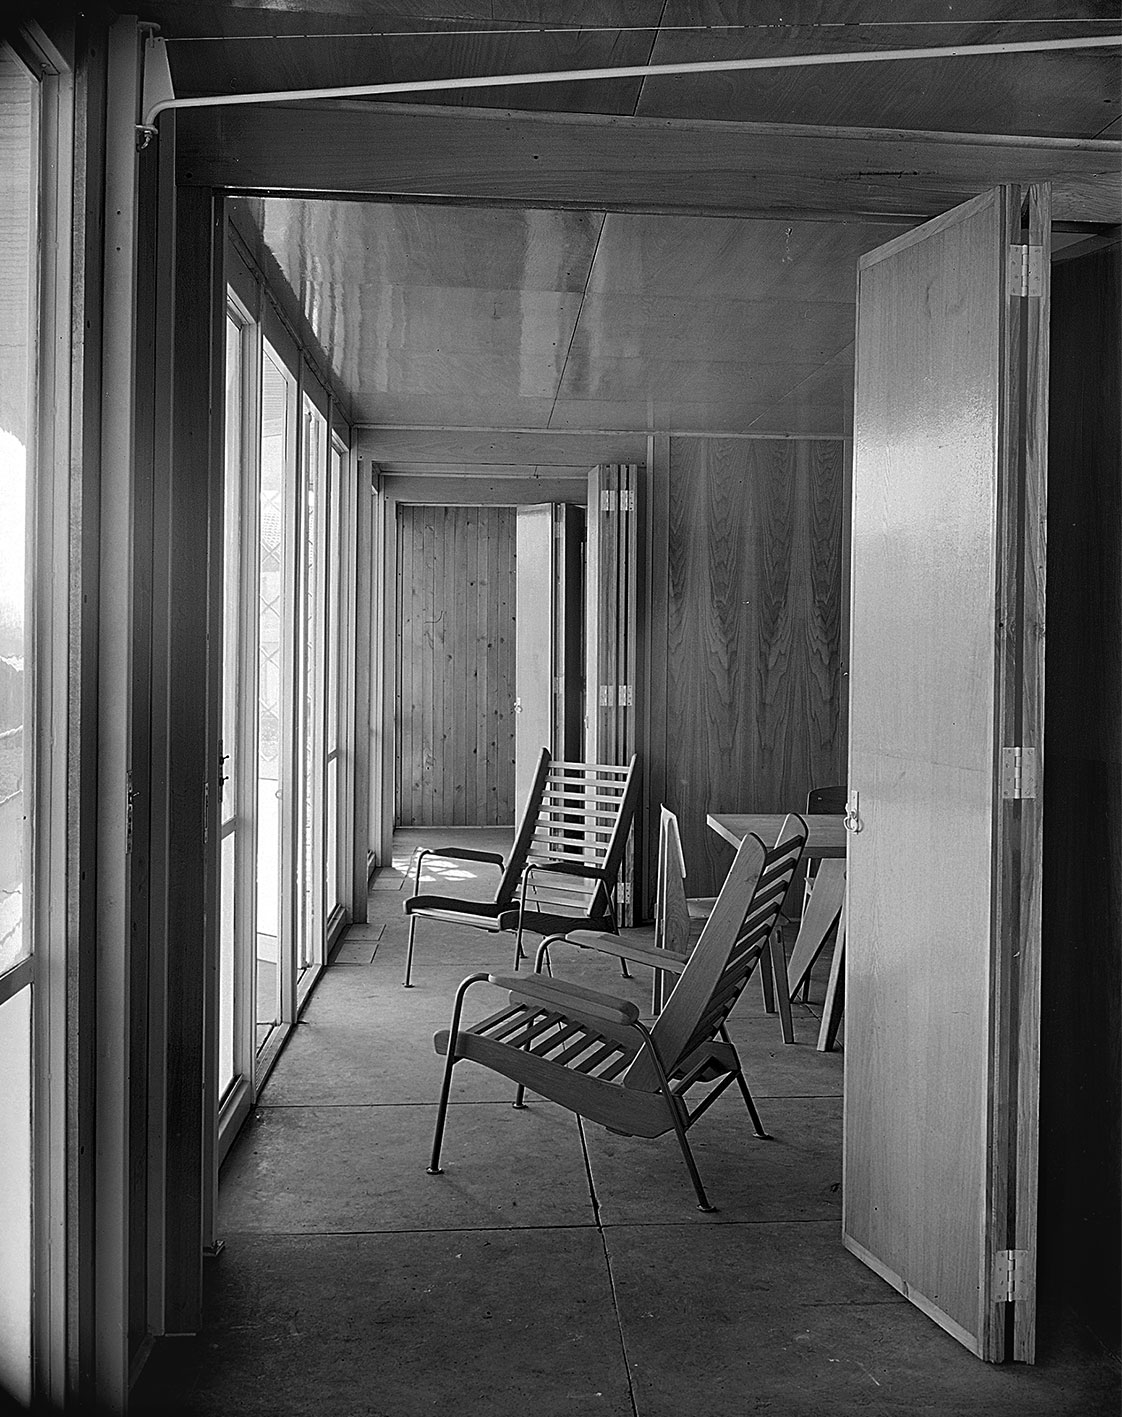 Maison-témoin des Ateliers Jean Prouvé, chantier d’expériences de Noisy-le-Sec (H. Prouvé, arch., 1946-1947), fauteuils Visiteur FV 11.